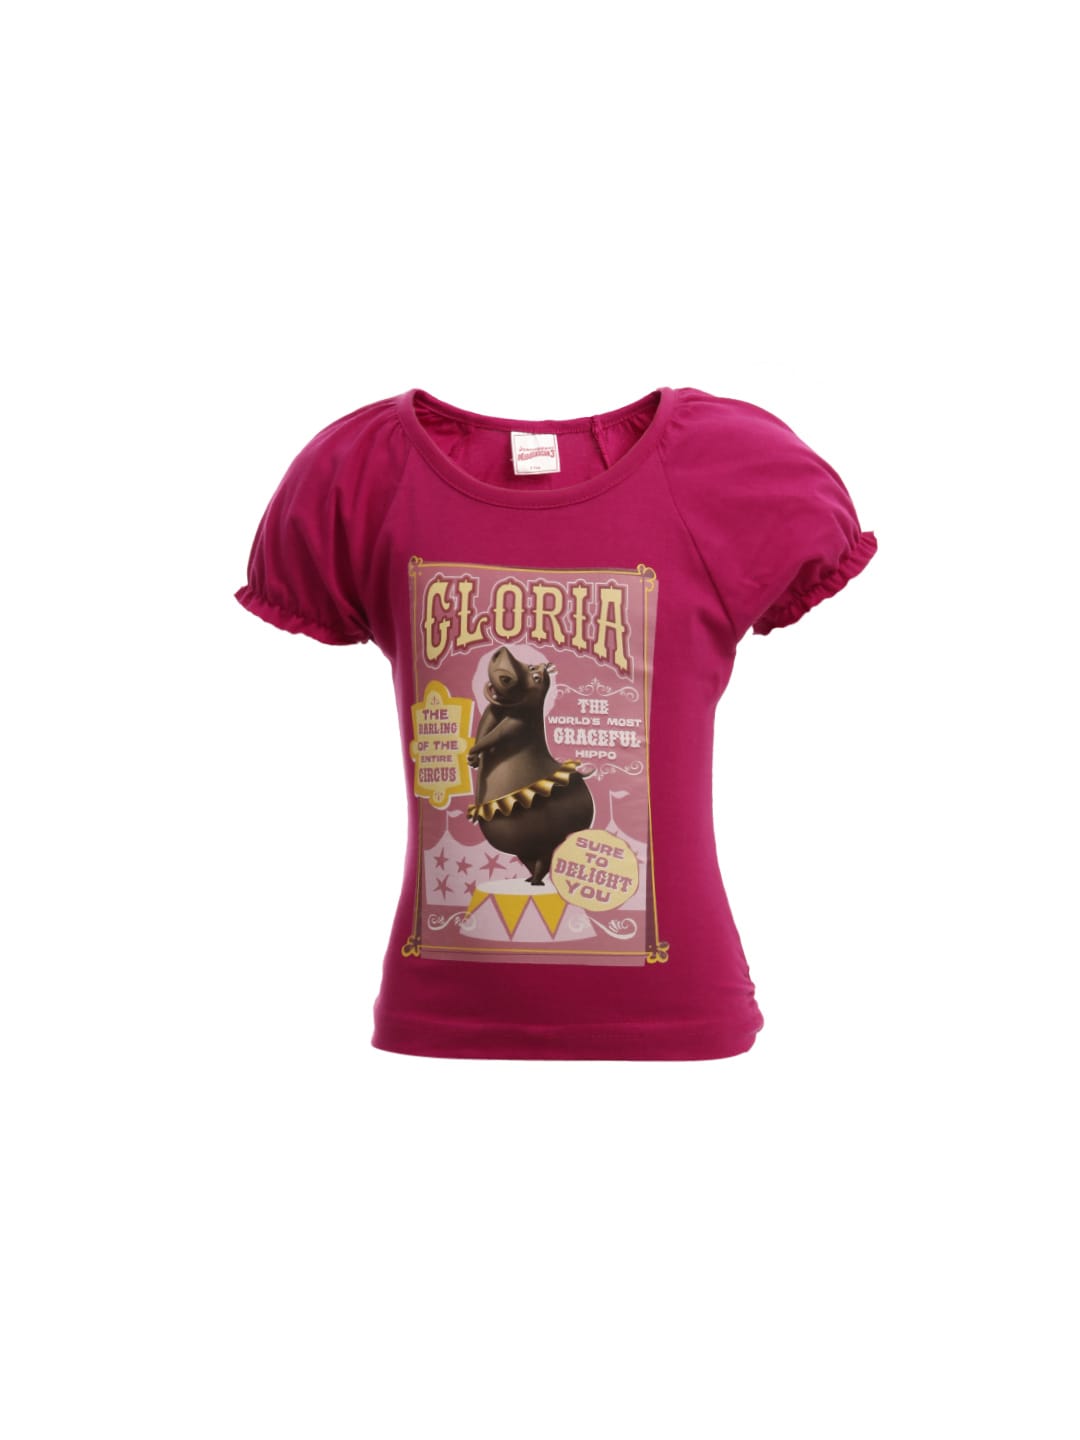 Madagascar3 Girls Pink Printed T-Shirt